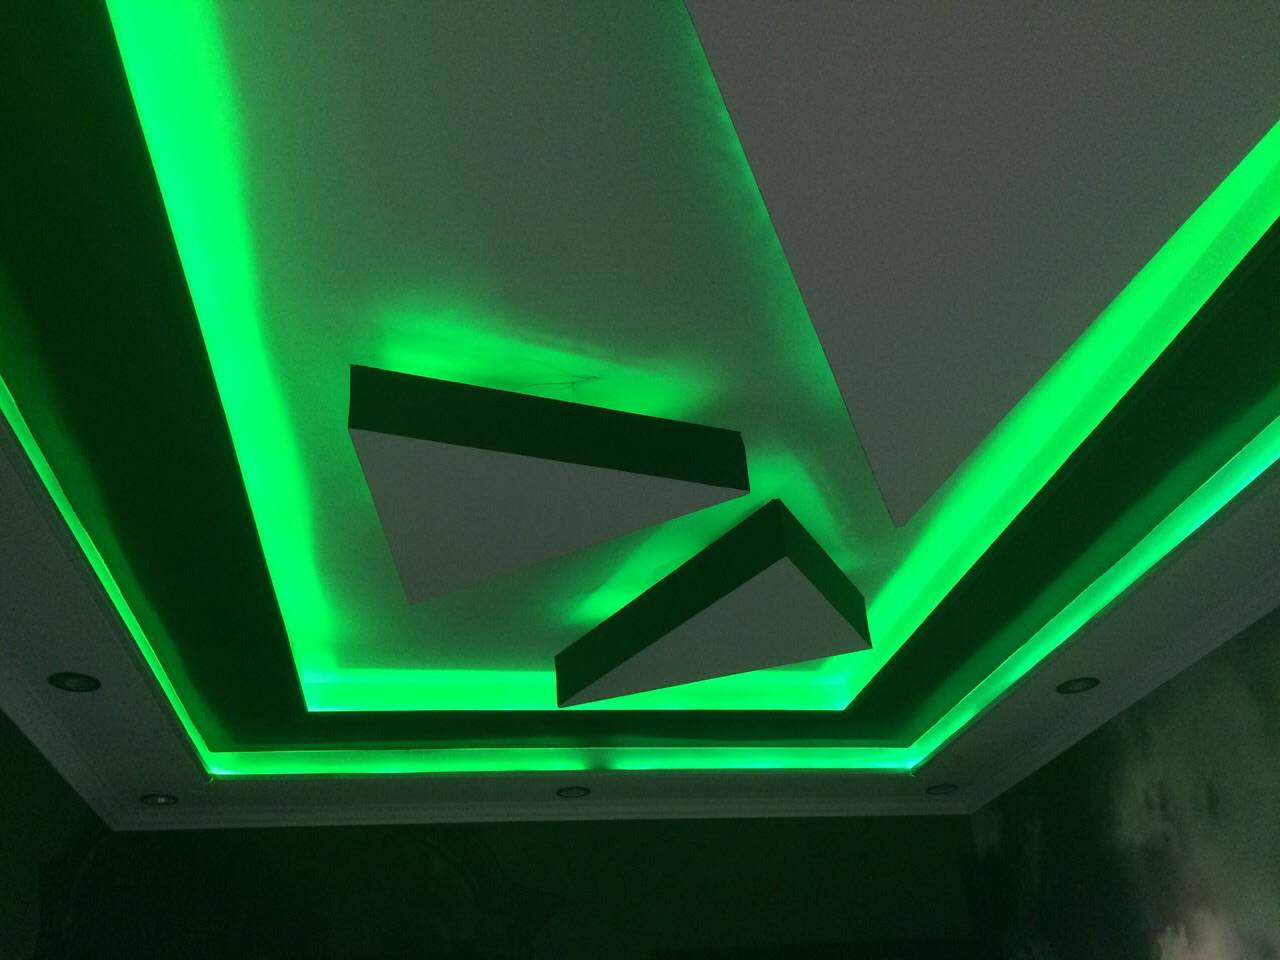 Как сделать двухуровневый потолок из гипсокартона с подсветкой: фото, видео